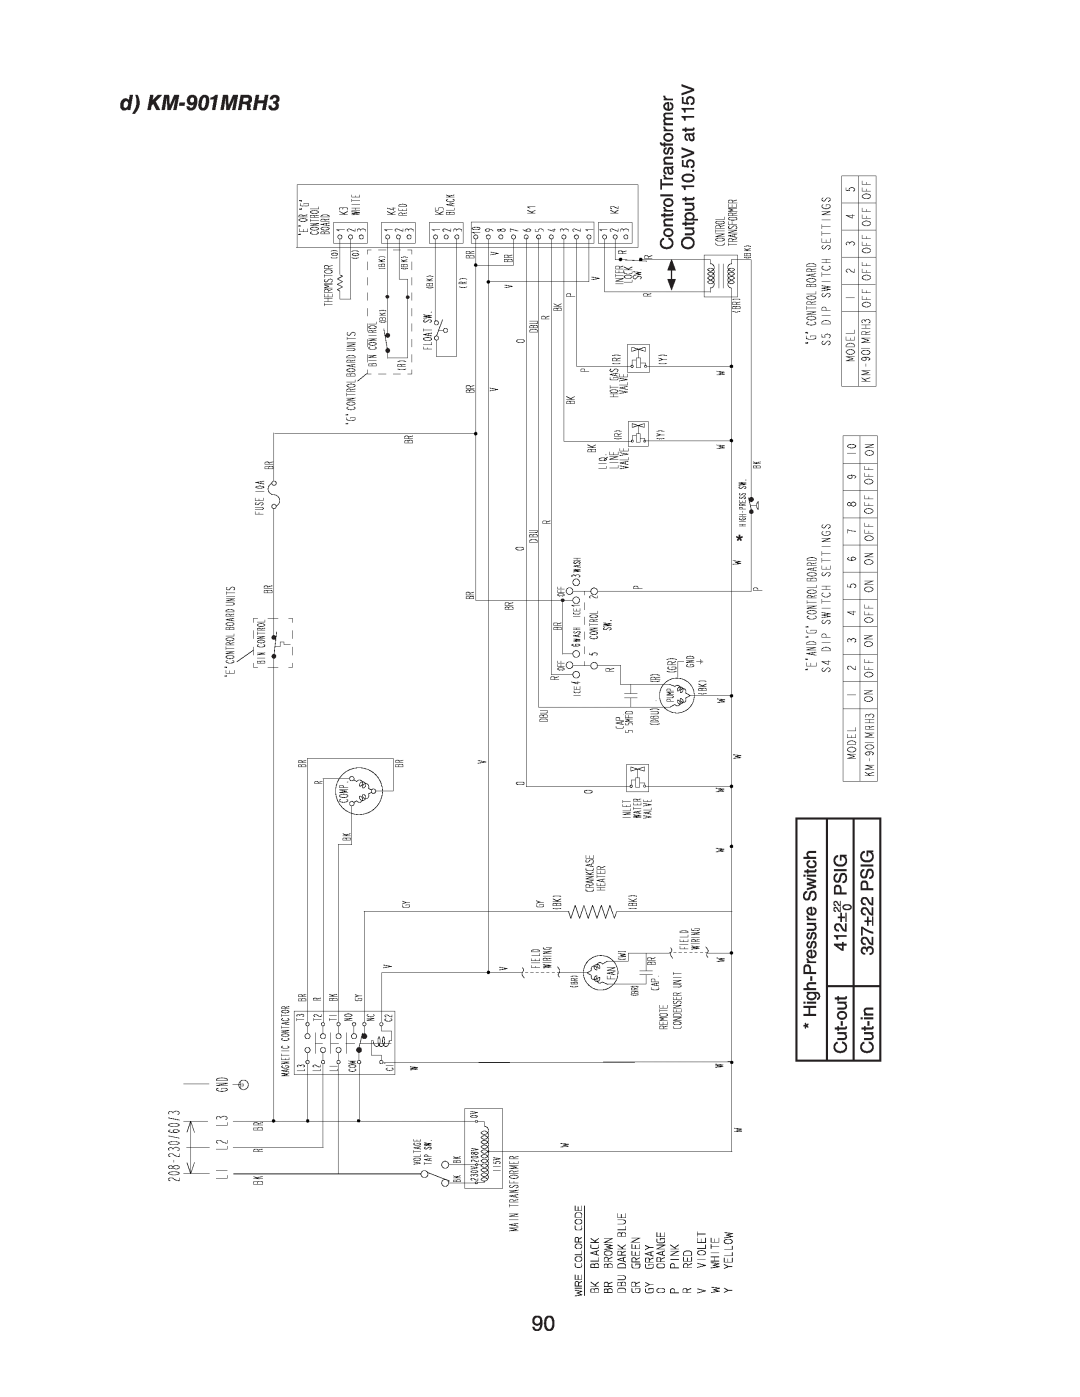 Hoshizaki KM-320MAH d KM-901MRH3, Control Transformer Output 10.5V at, High-Pressure Switch, Cut-out, 412±, Psig, Cut-in 